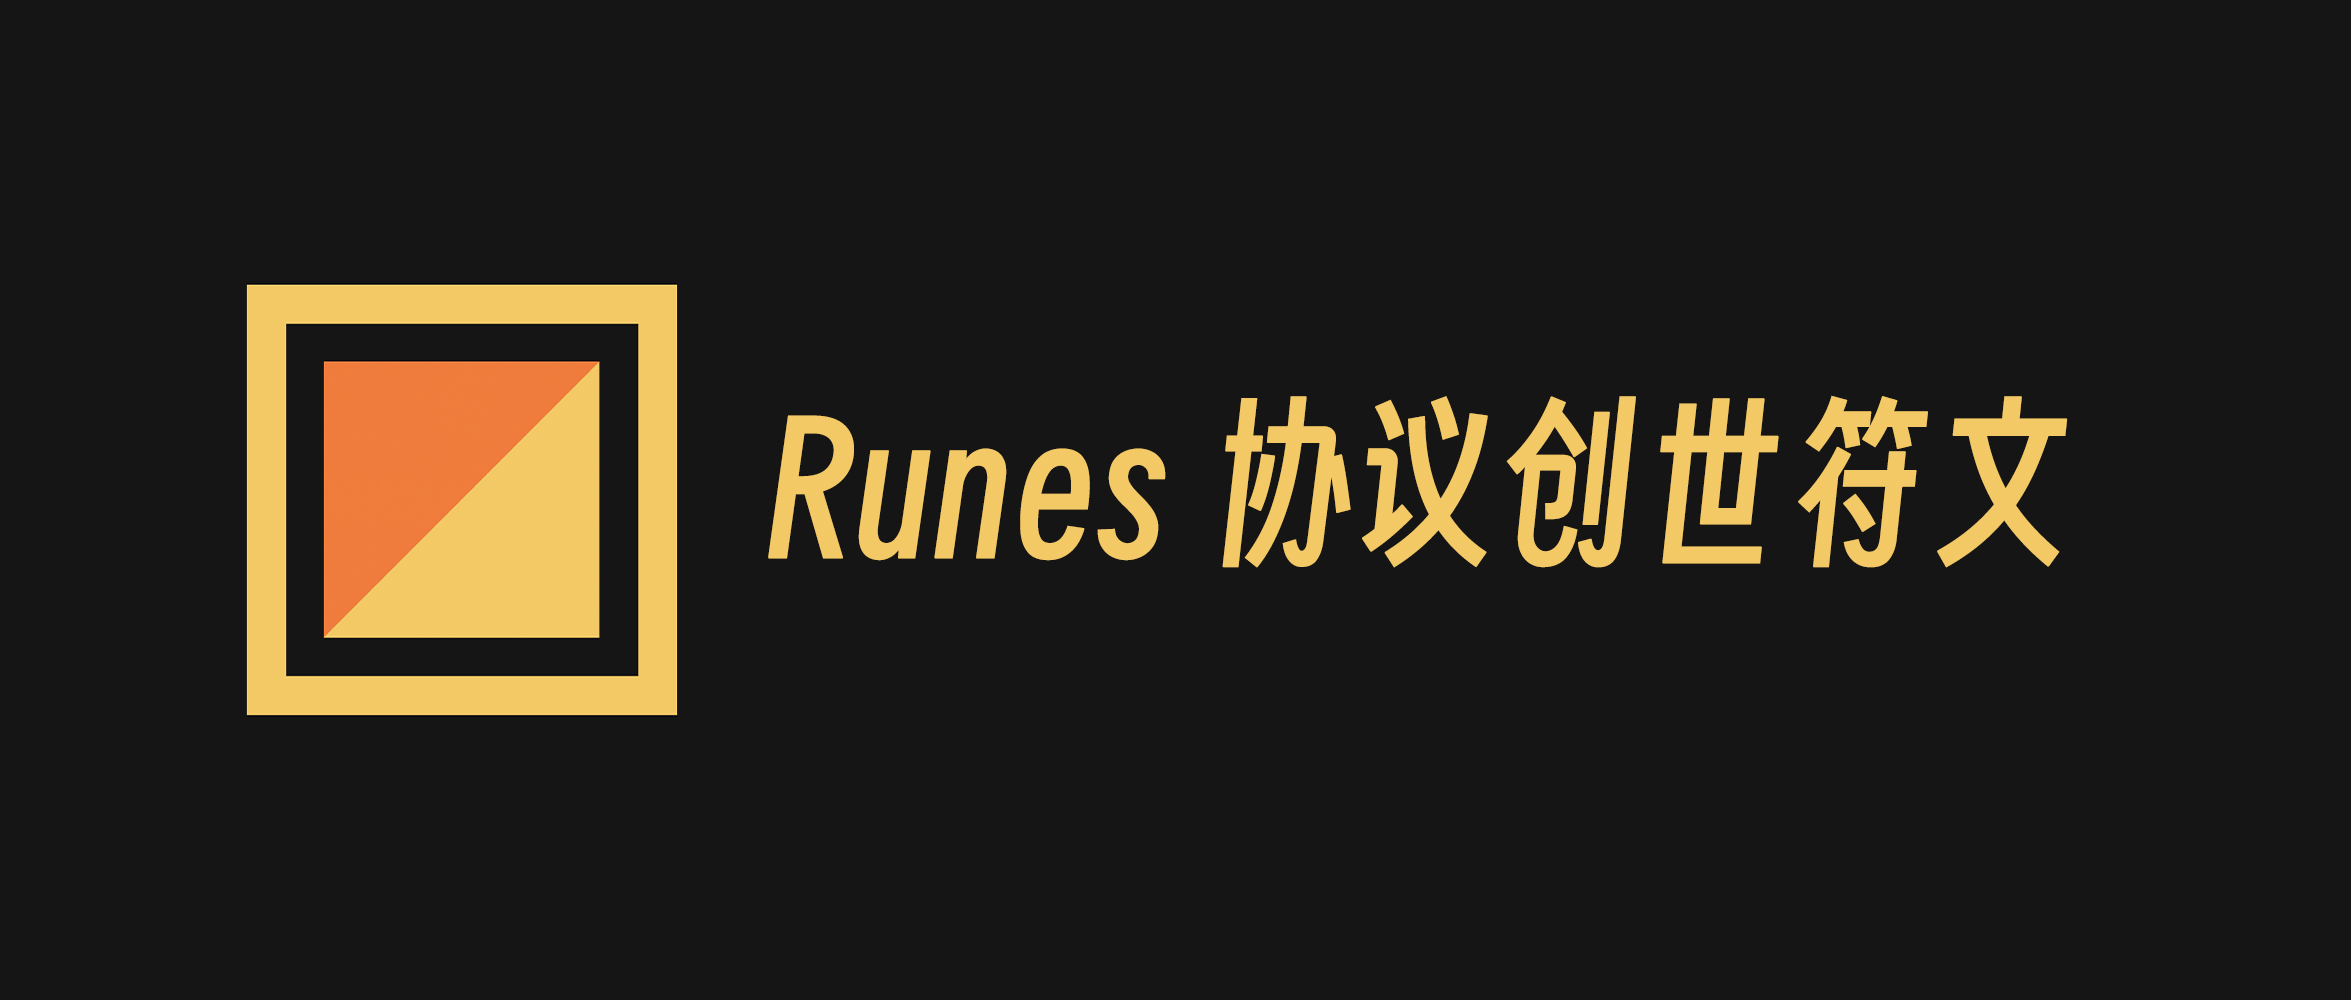 Runes 协议创始人 Casey 发布了 24 个创世符文的名称的 idea